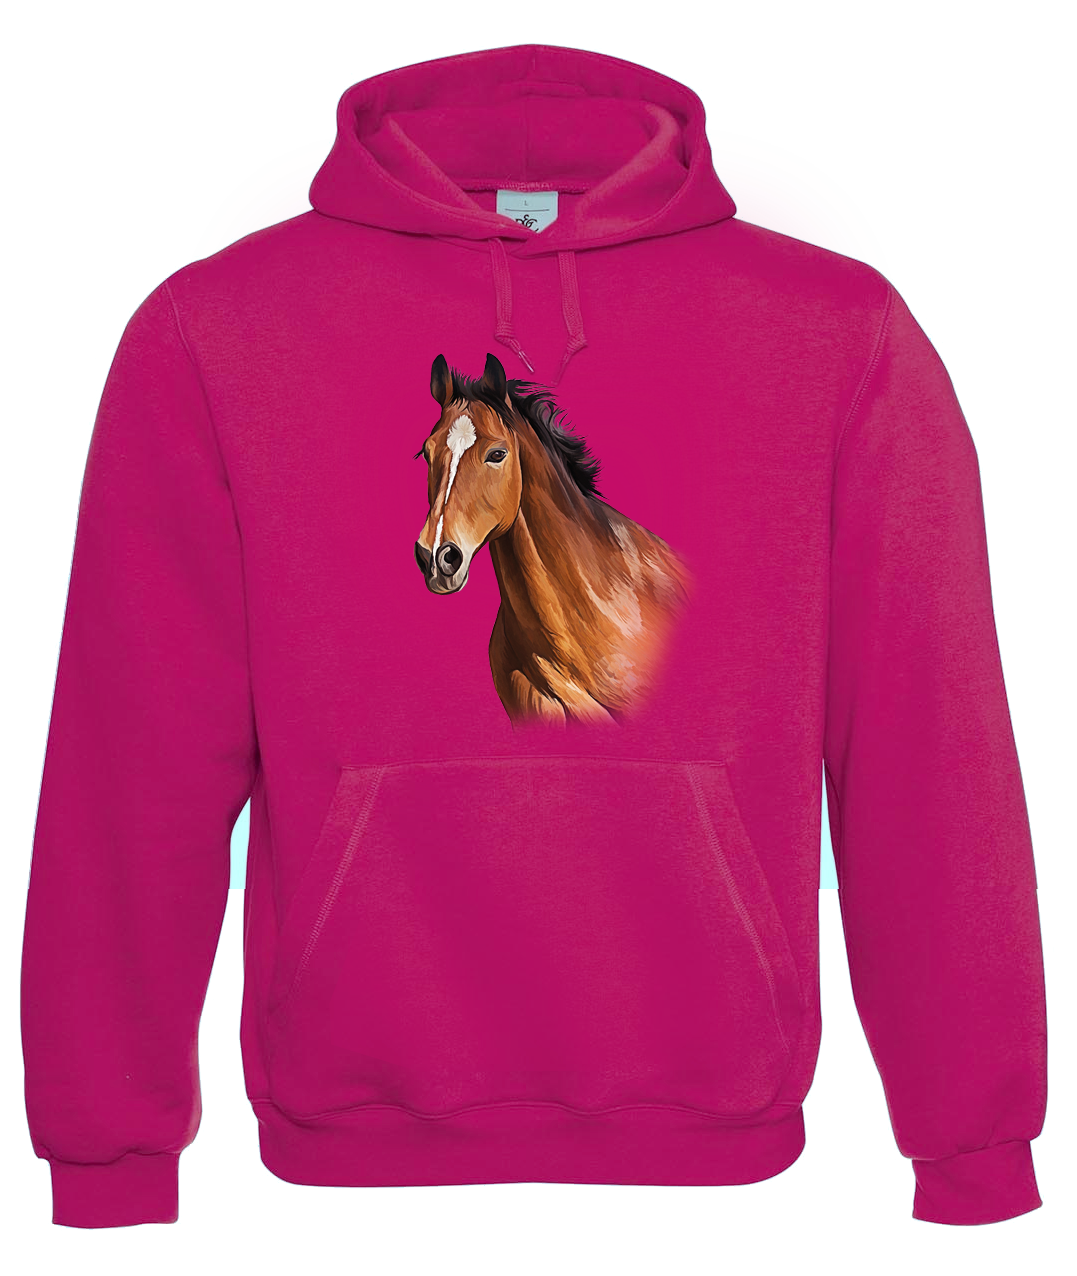 Mikina s koněm - Hnědák Velikost: XL, Barva: Tmavě růžová